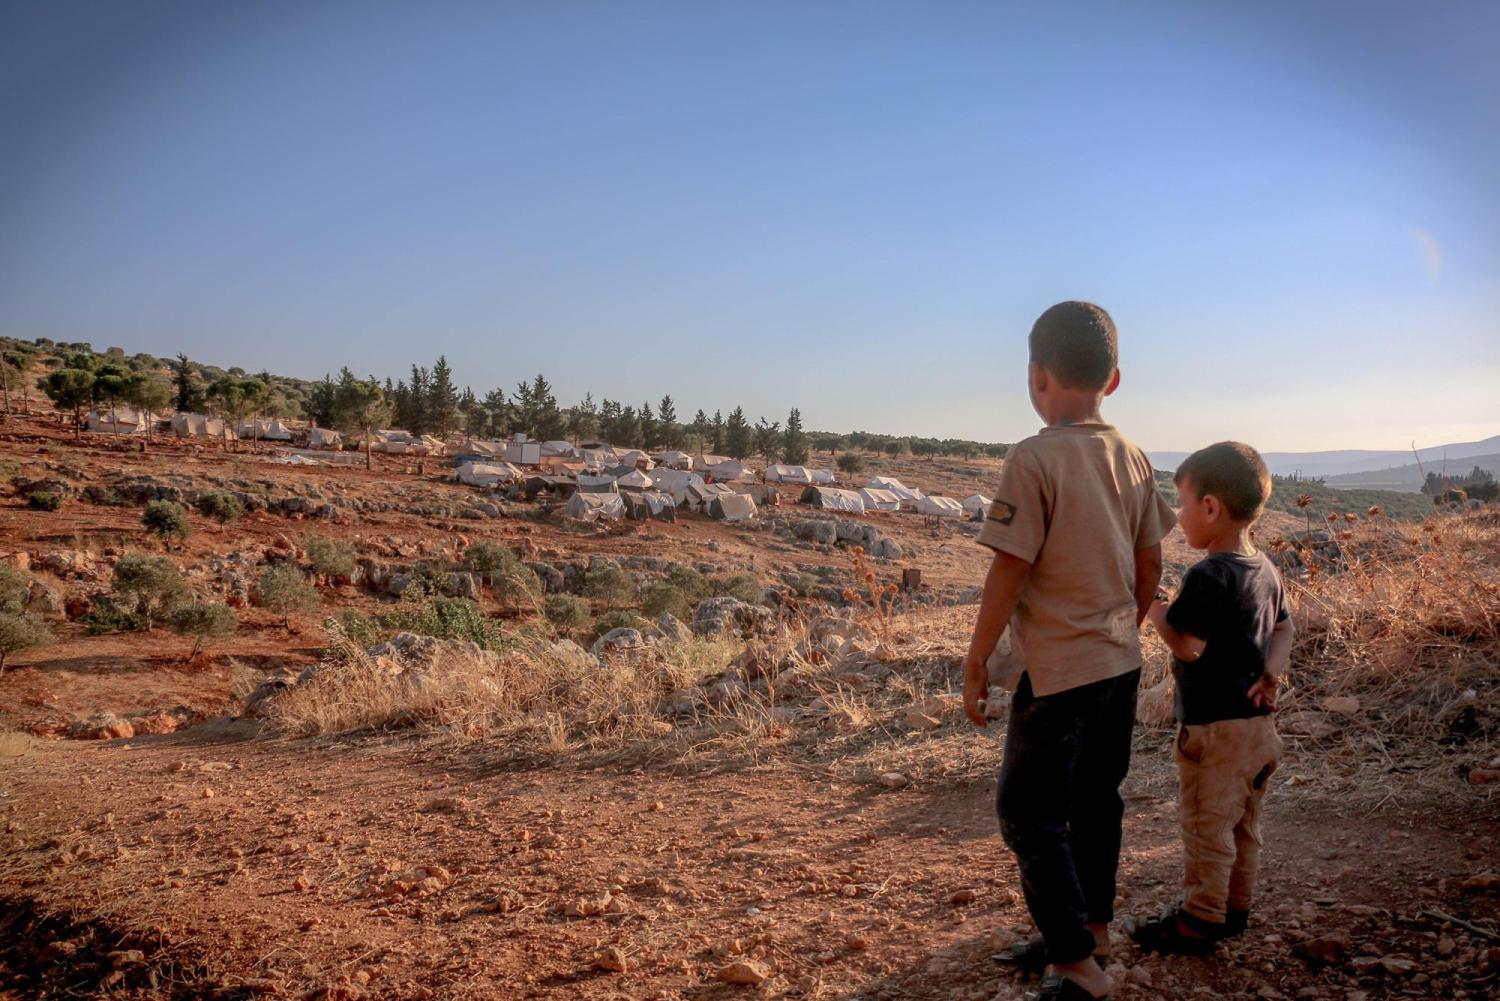 Boys at refugee camp